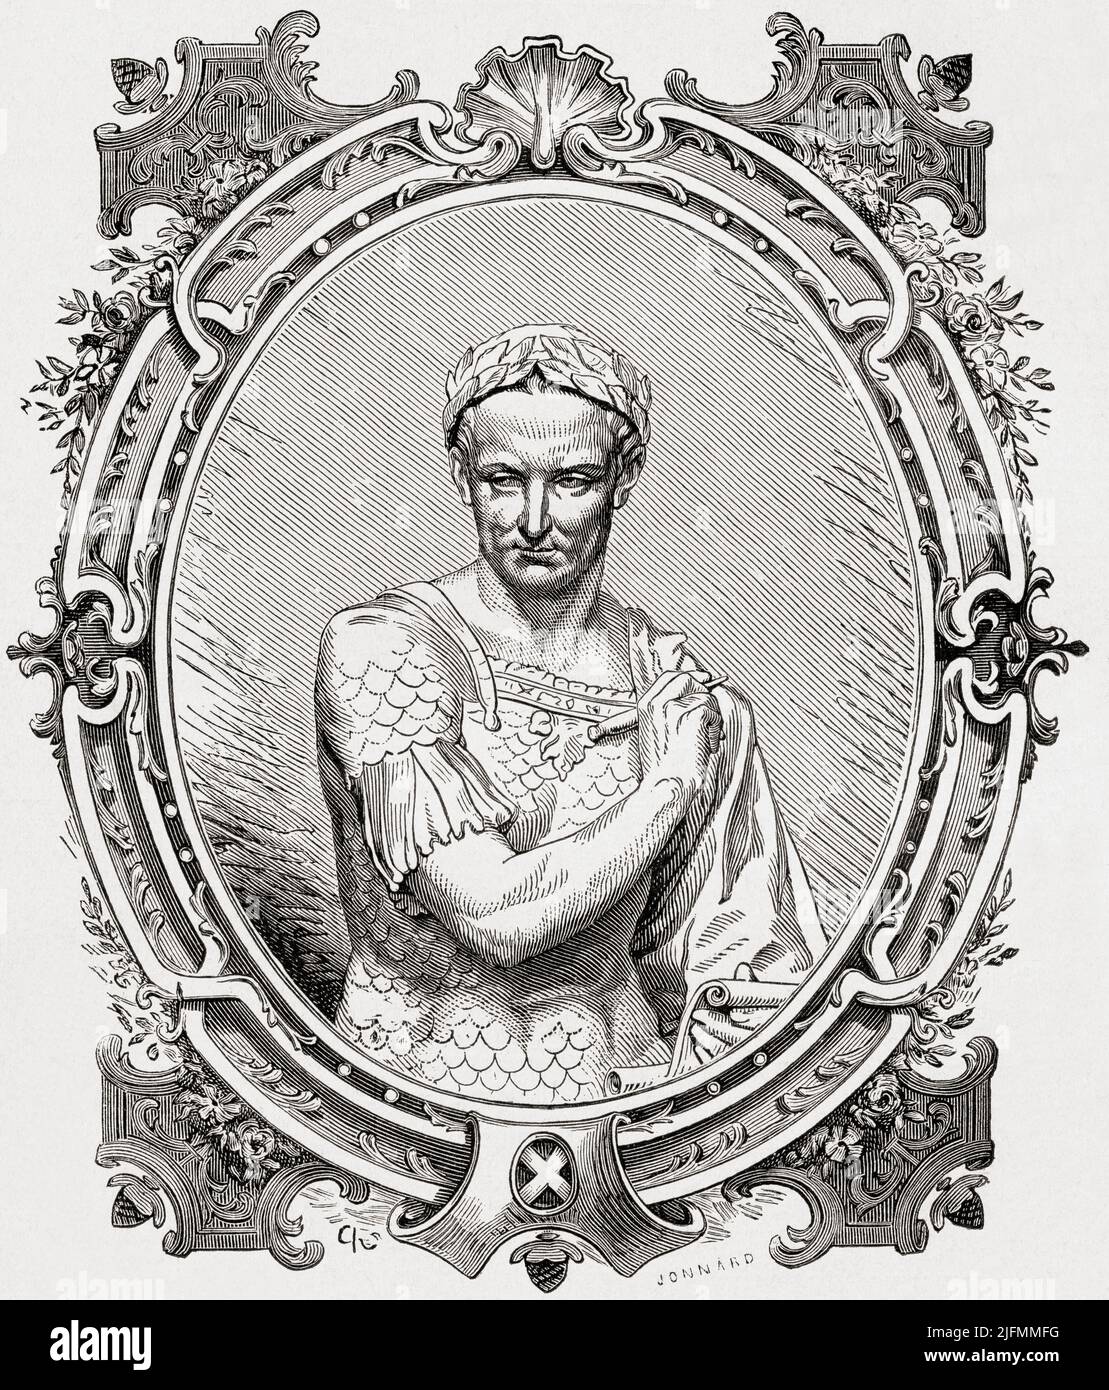 Gaius Julius Caesar, 100 v. Chr. – 44 v. Chr. Römischer General und Staatsmann. Aus Histoire de France, veröffentlicht 1855. Stockfoto